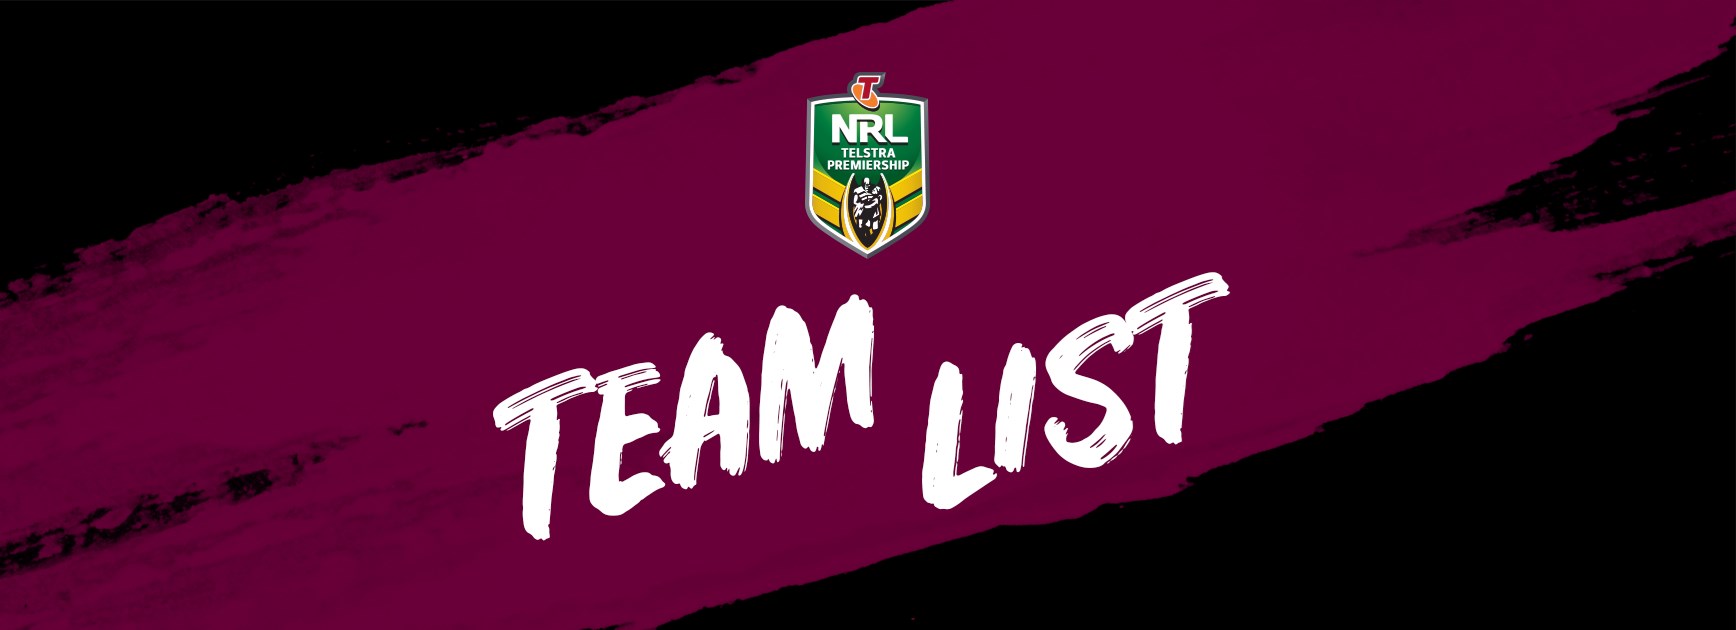 NRL Team List - Round 12